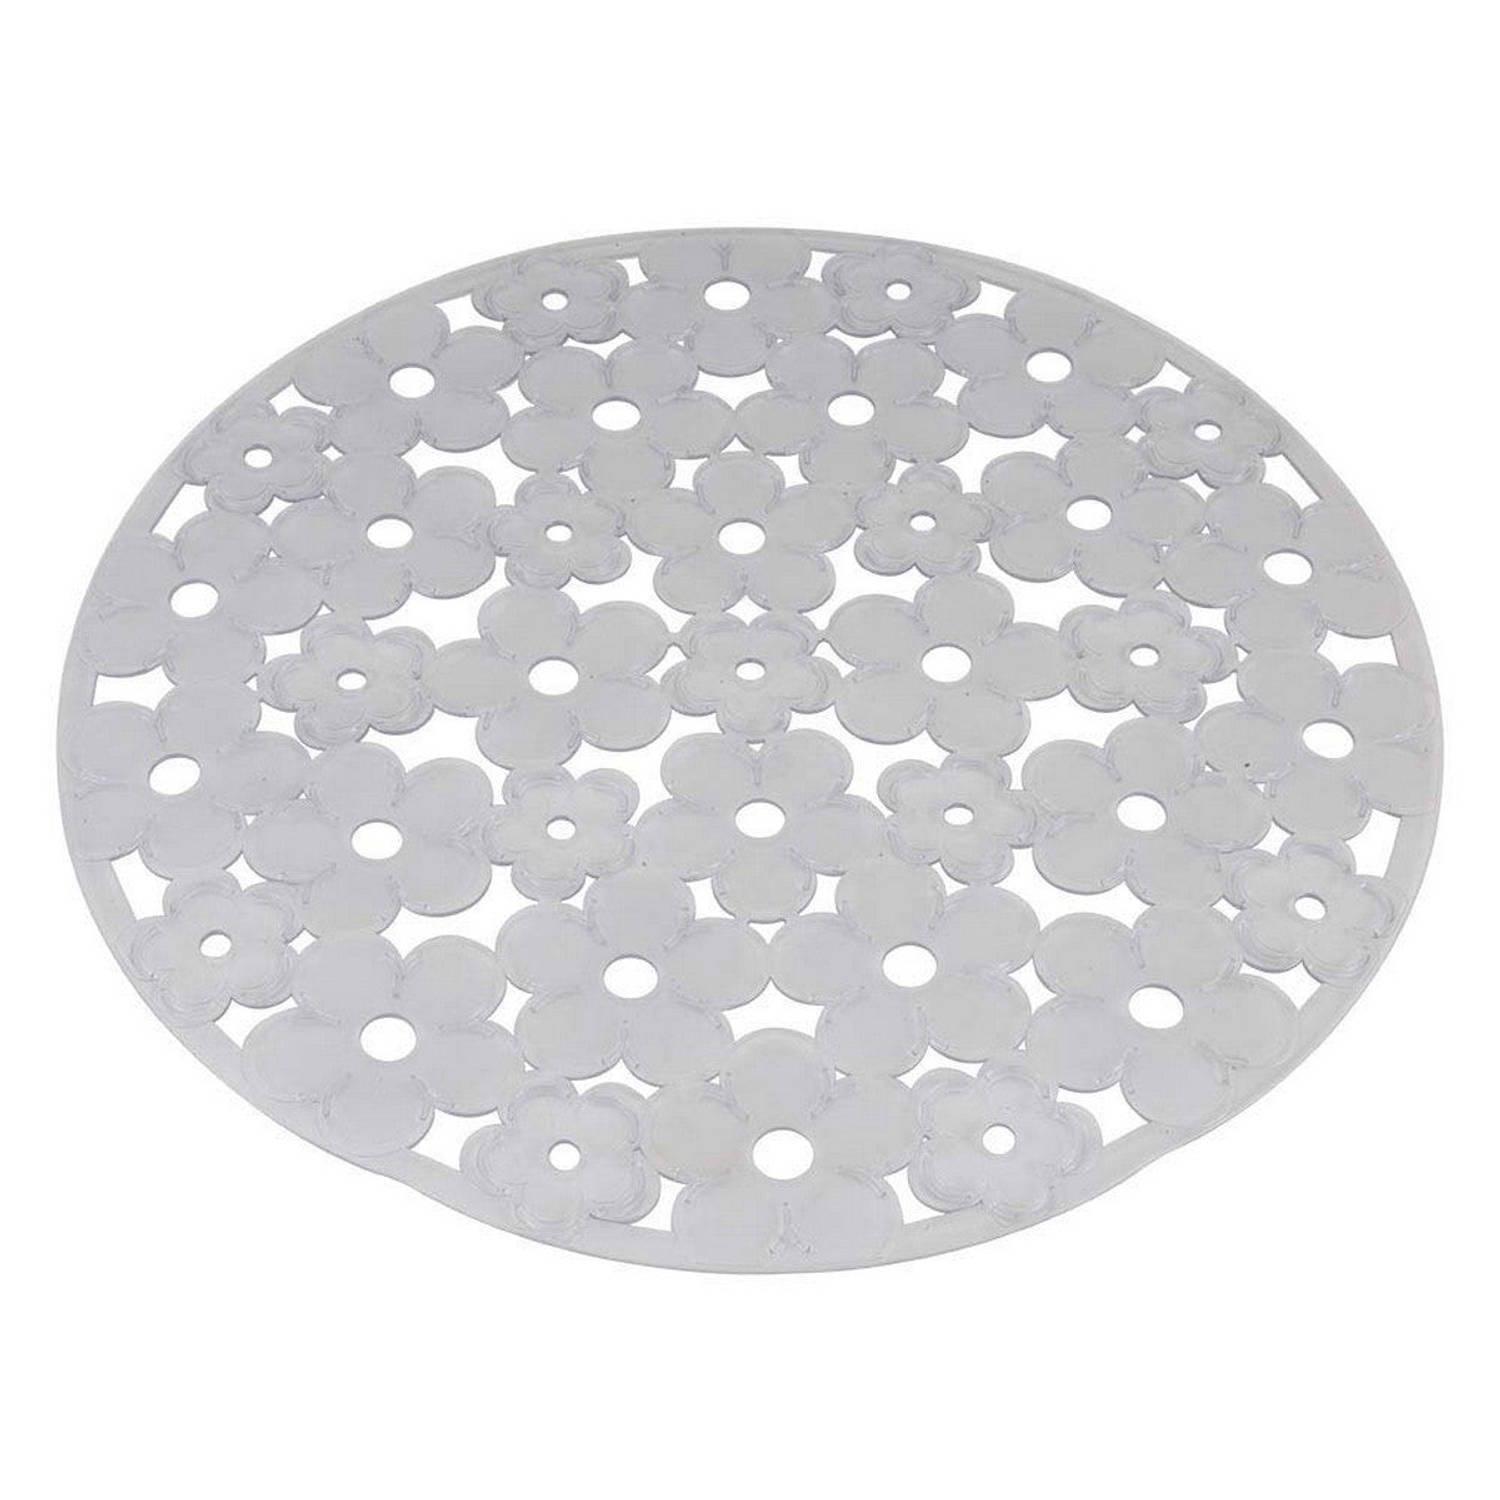 Afdruiprek voor Keukengootsteen Metaltex Cirkelvormig PVC Doorschijnend (Ø30 cm)